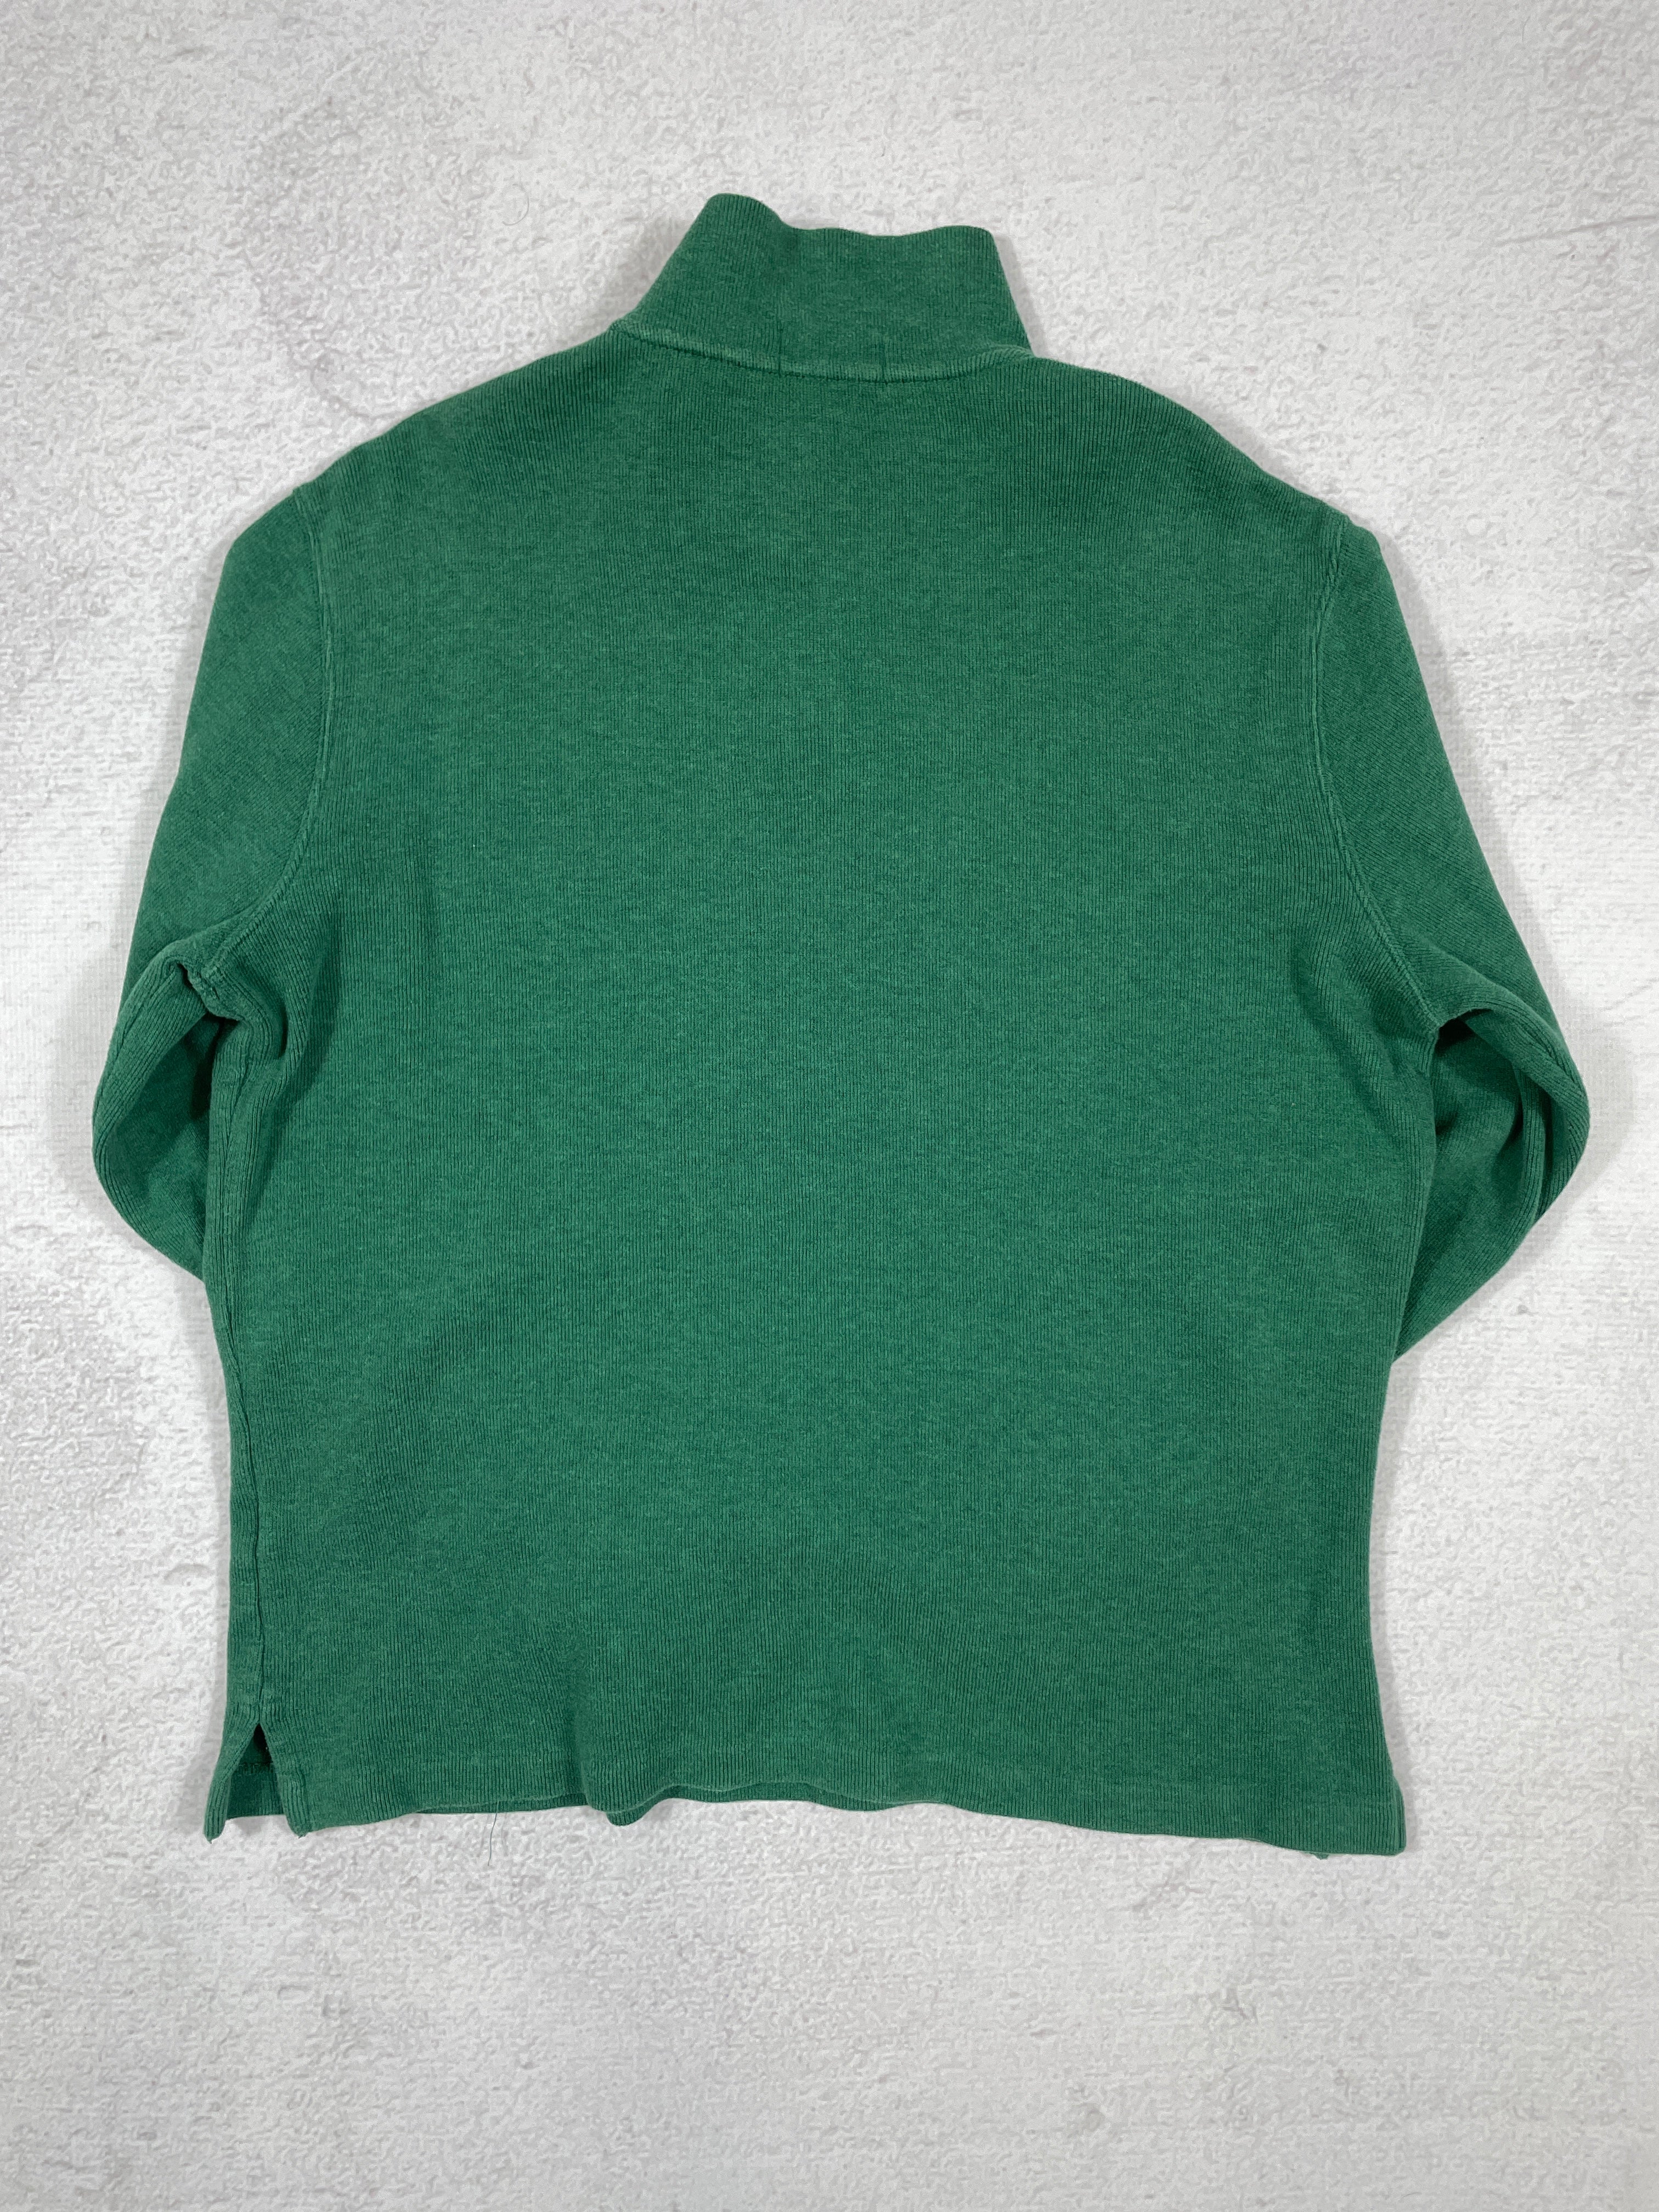 Vintage Polo Ralph Lauren 1/4 Zip Sweatshirt - Men's Medium